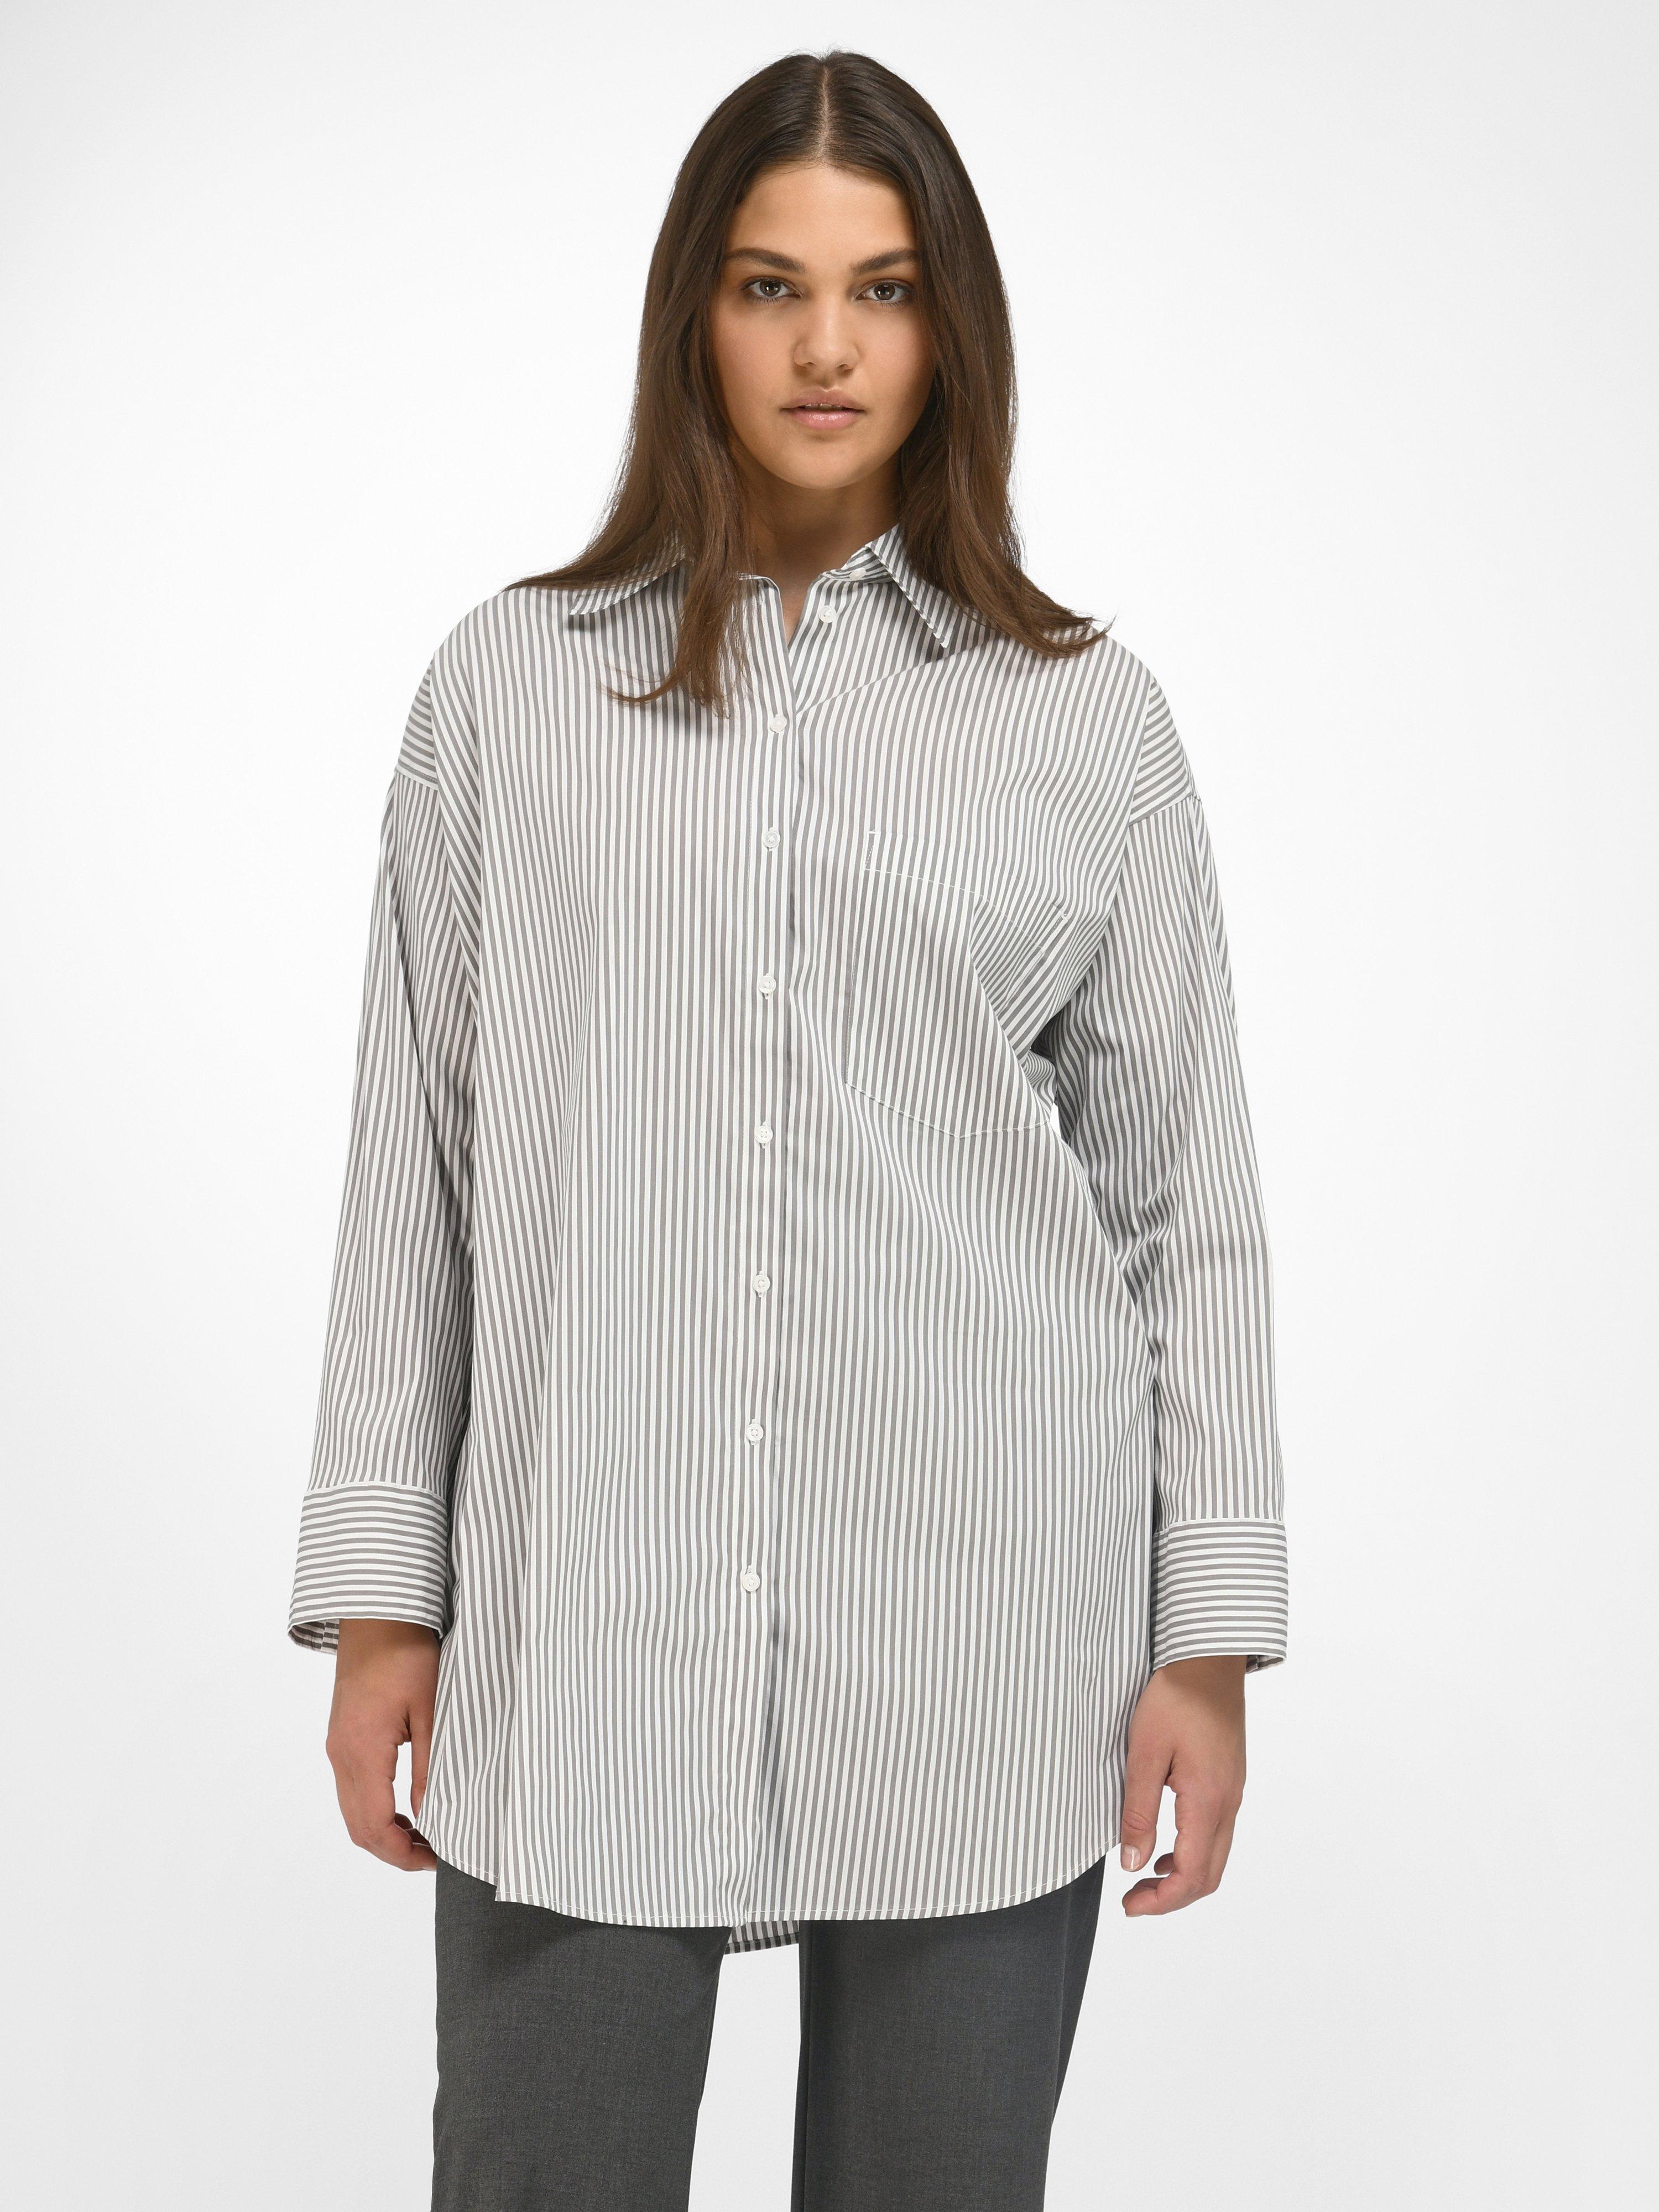 transfusie de wind is sterk Voeding Via Appia Due - Lange blouse met strepen - wit/grijs